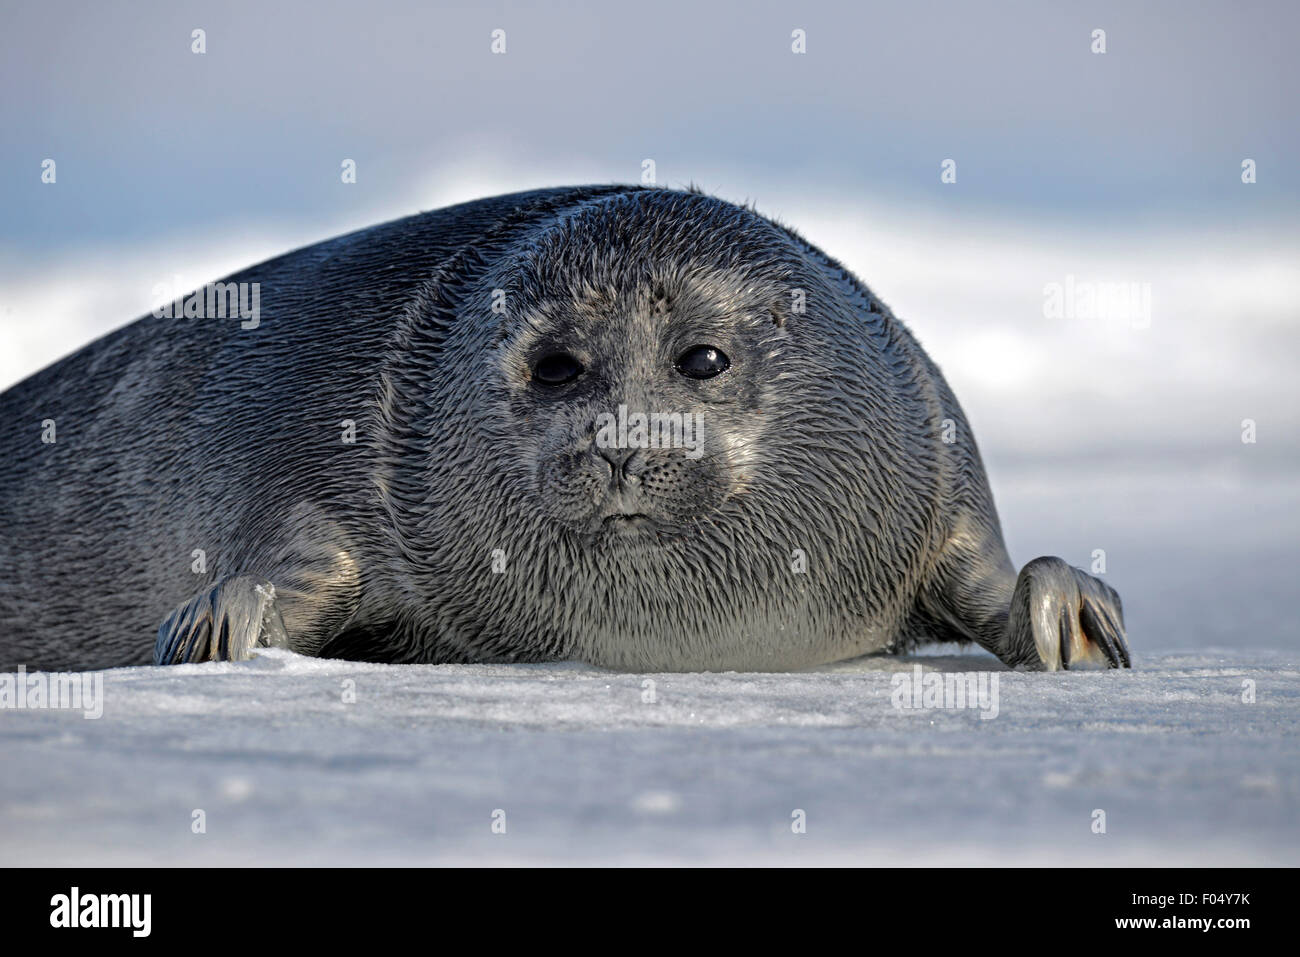 Baikal seal (Pusa sibirica, Phoca sibirica), les petits phoques d'eau douce, couché sur la glace, glace d'un lac Baikal, Sibérie, Russie Banque D'Images